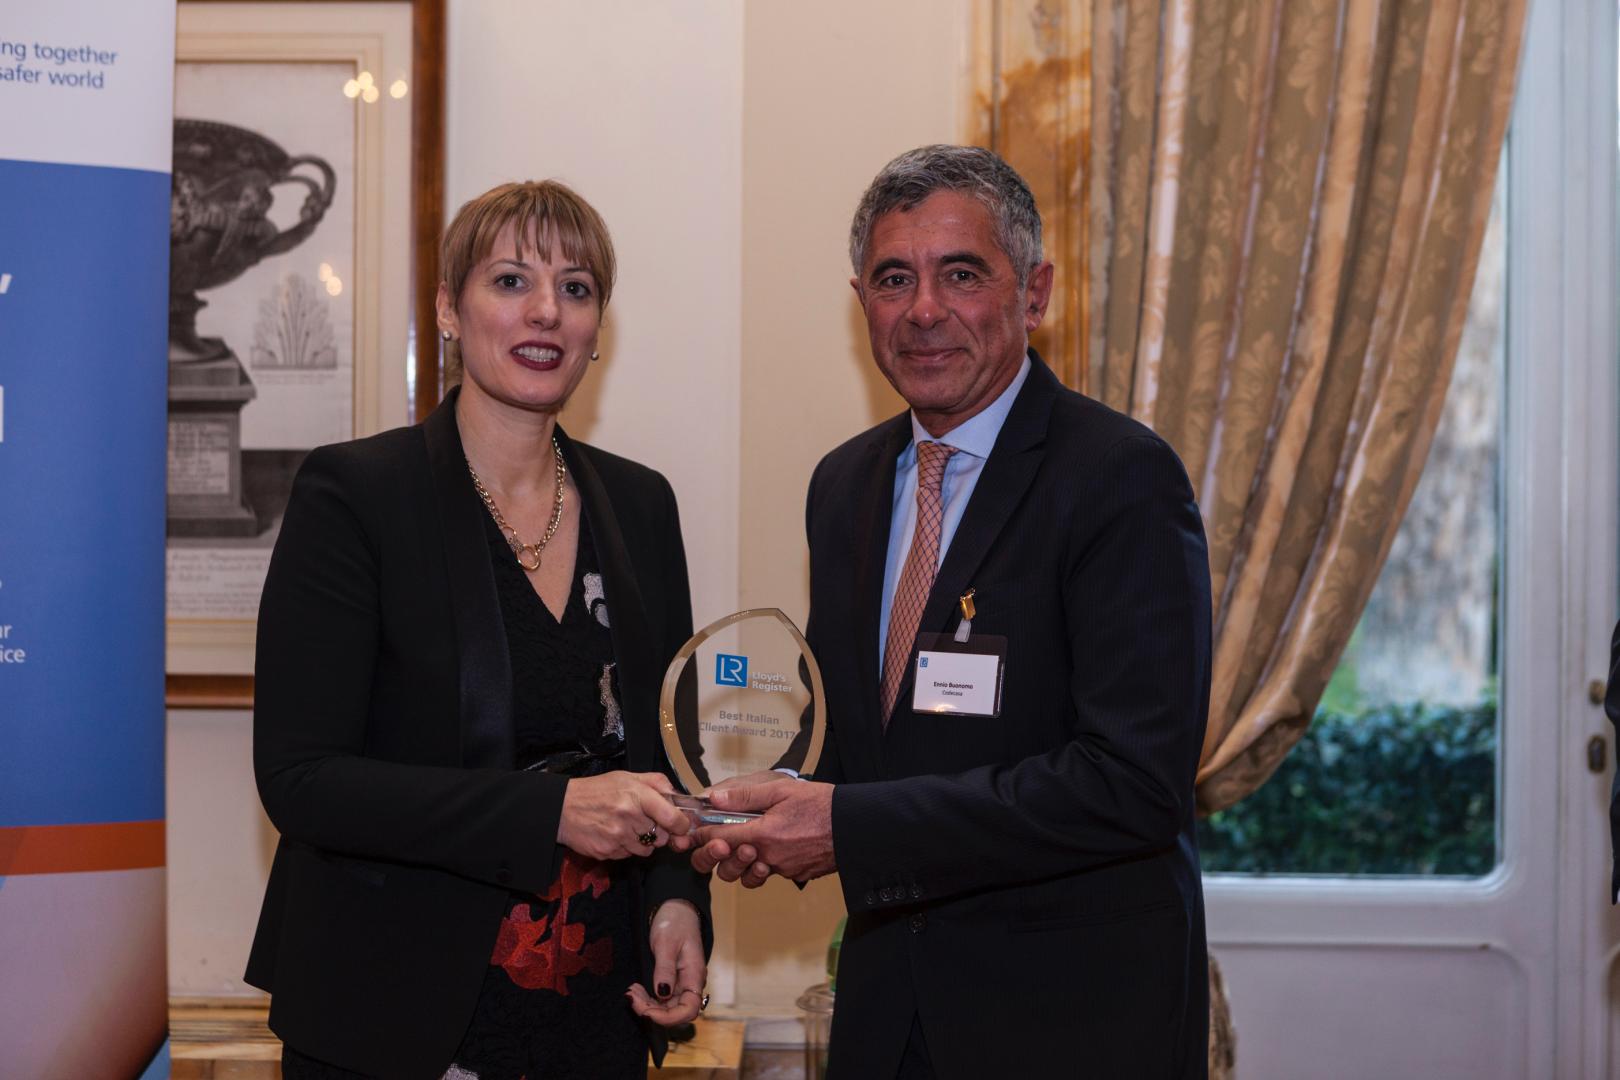 Jill Morris, Ambasciatore Britannico, consegna il Premio conferito ai Cantieri Navali Codecasa dalla Lloyd’s Register Foundation